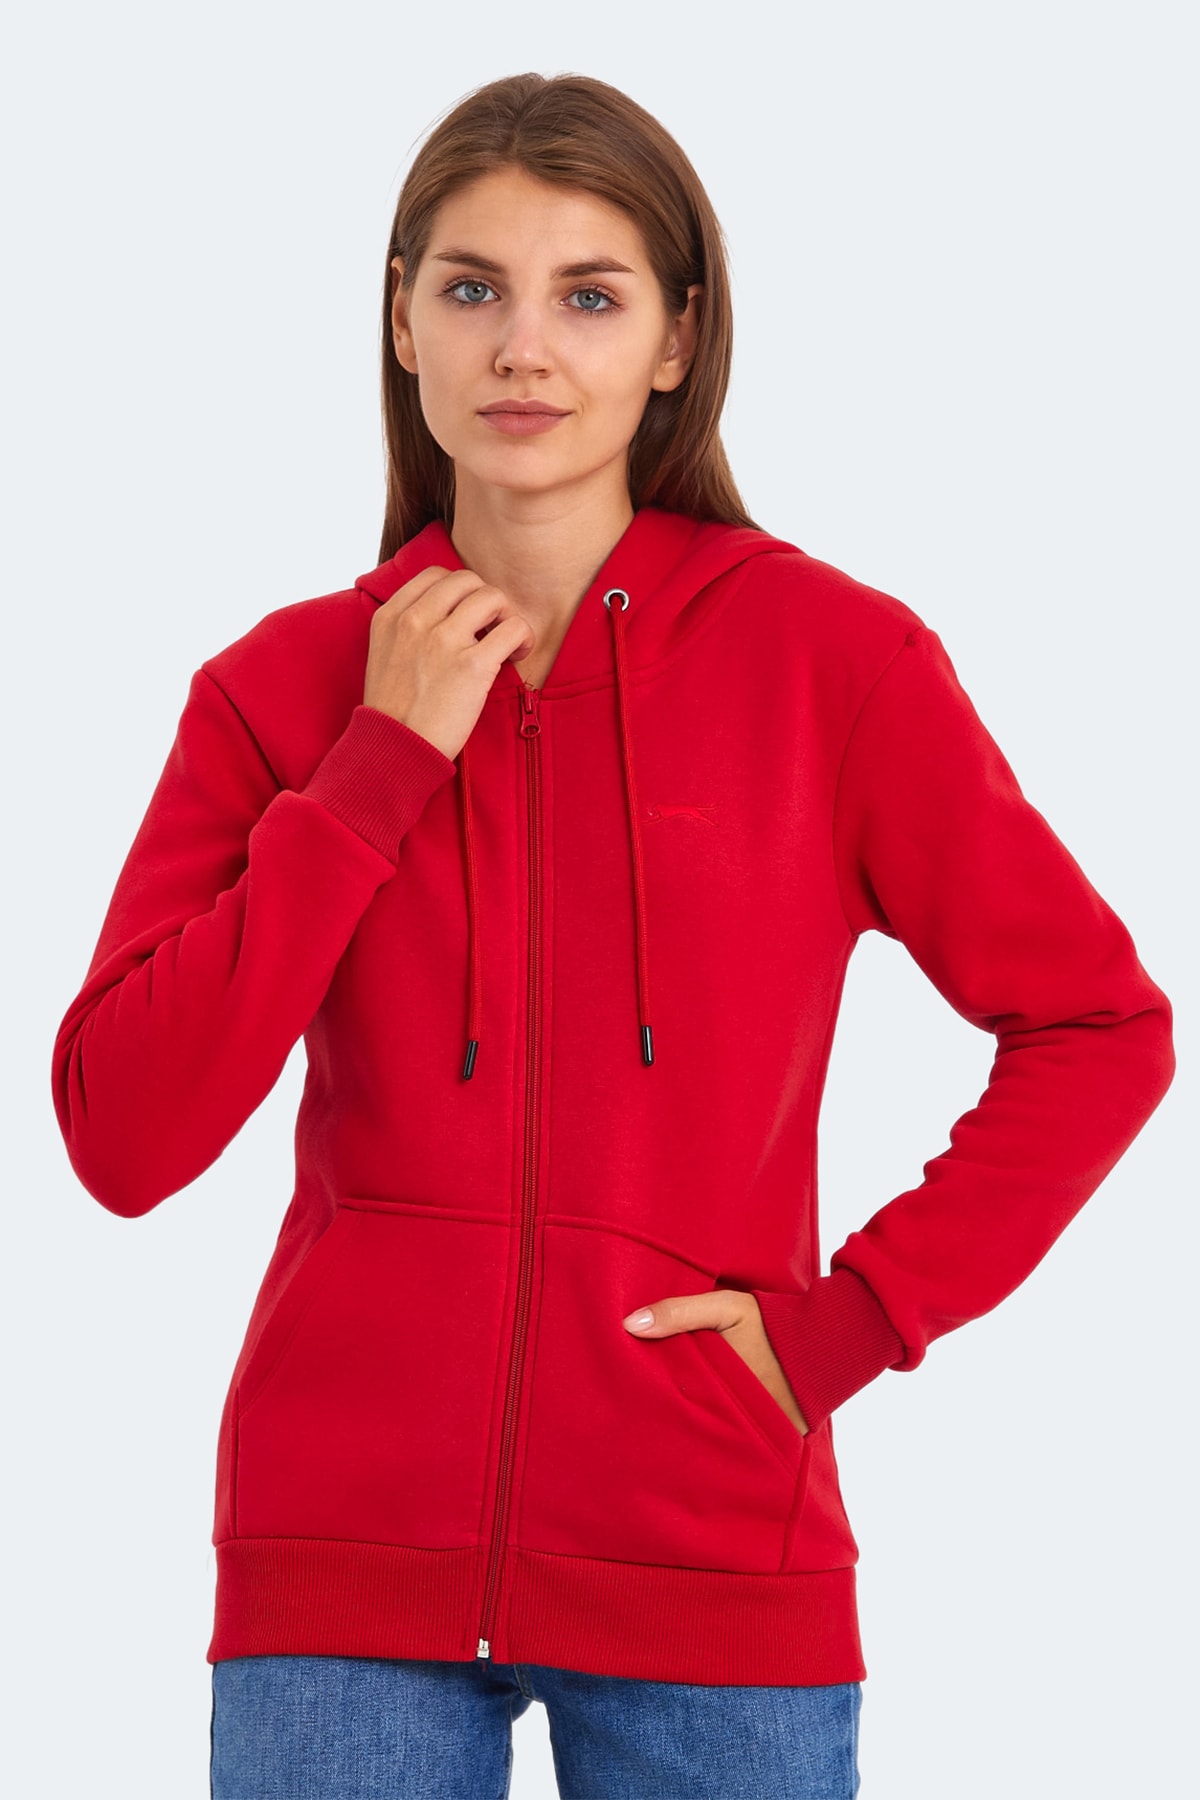 Slazenger KATYA Women's Sweatshirt Red